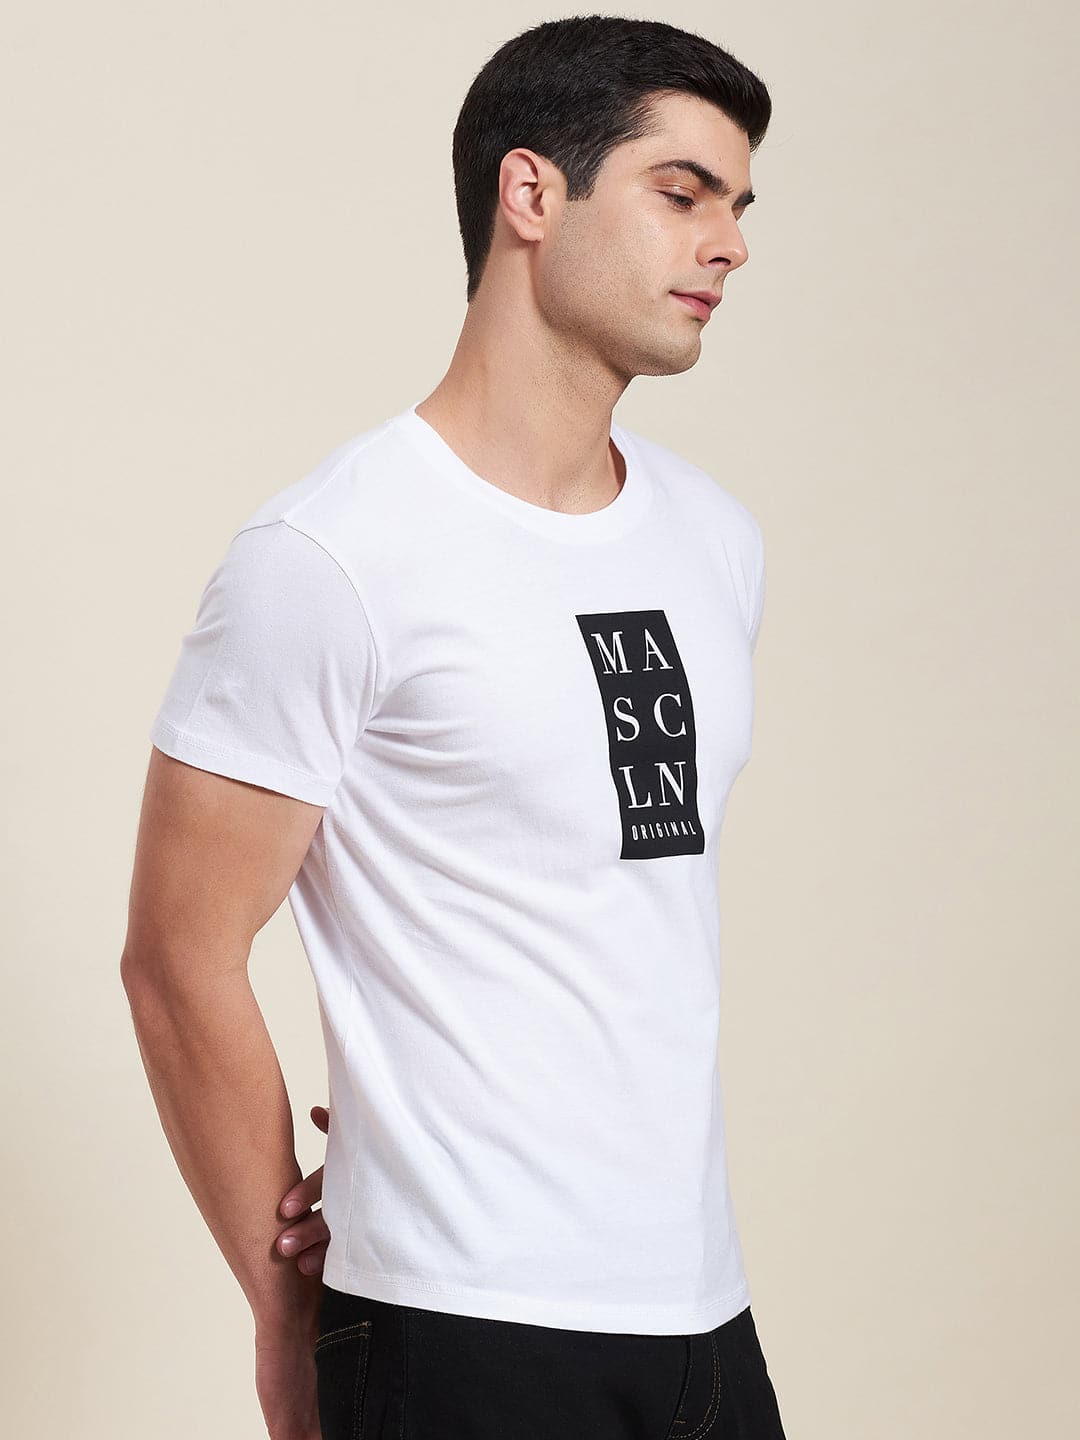 Men's White Vertical MASCLN Slim Fit T-Shirt - LYUSH-MASCLN